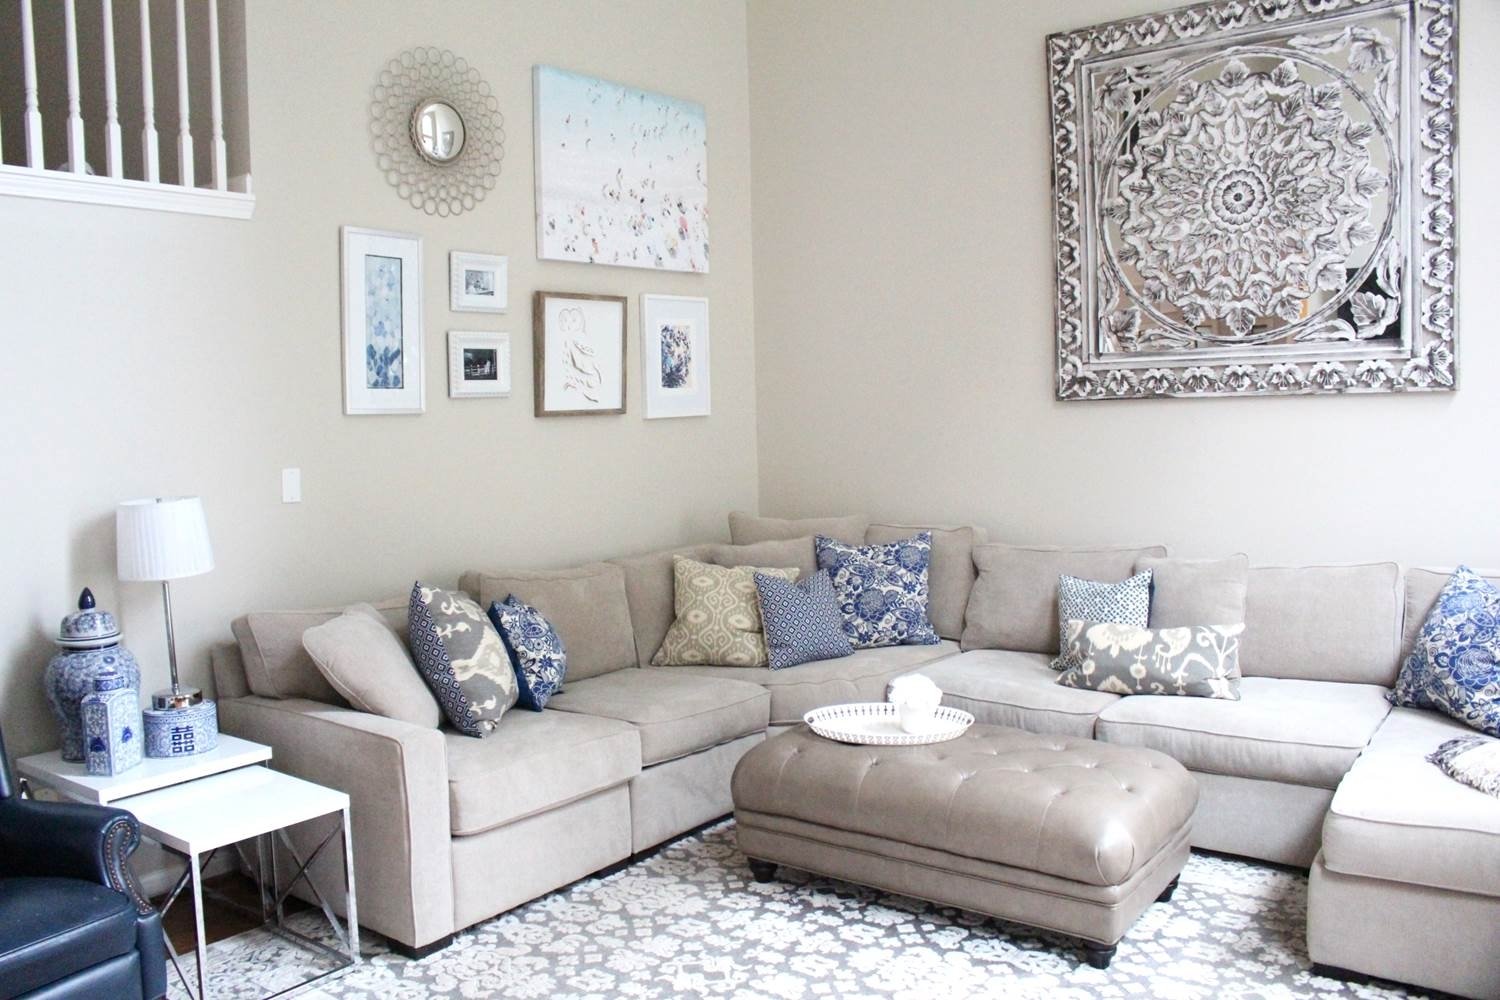 10 Elegant Wall Art For Living Room Ideas splendid wall art for small living room decoration complete fabulous 2022